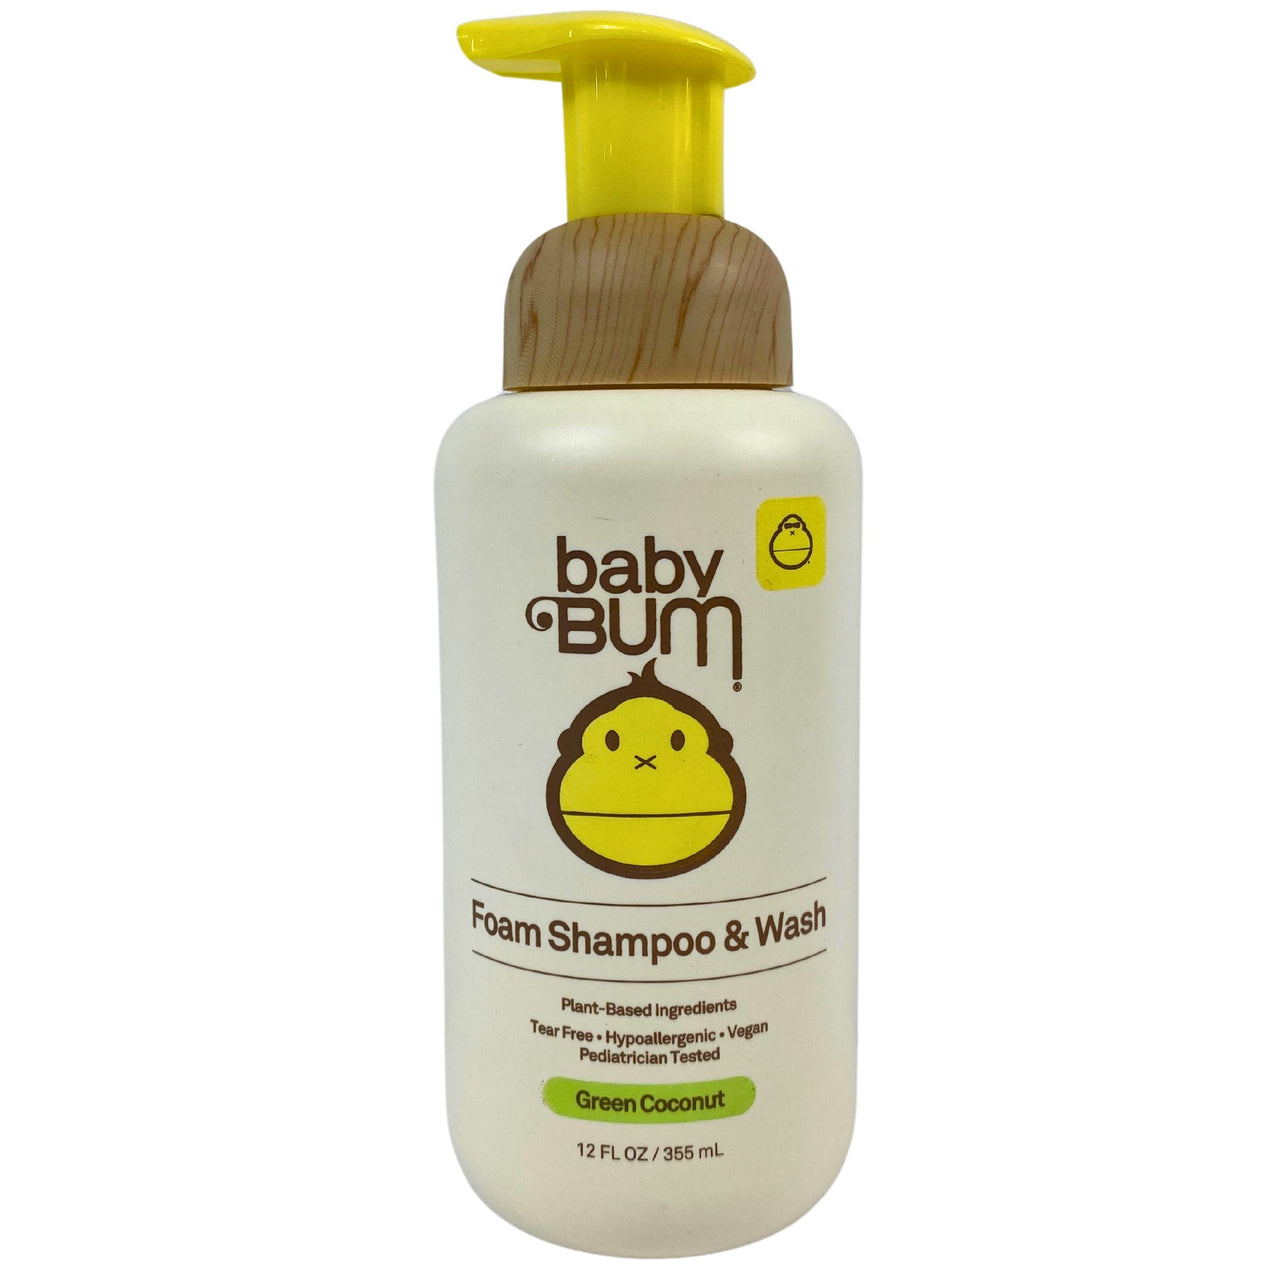 Baby Bum Foam Shampoo & Wash Green Coconut Plant Based 